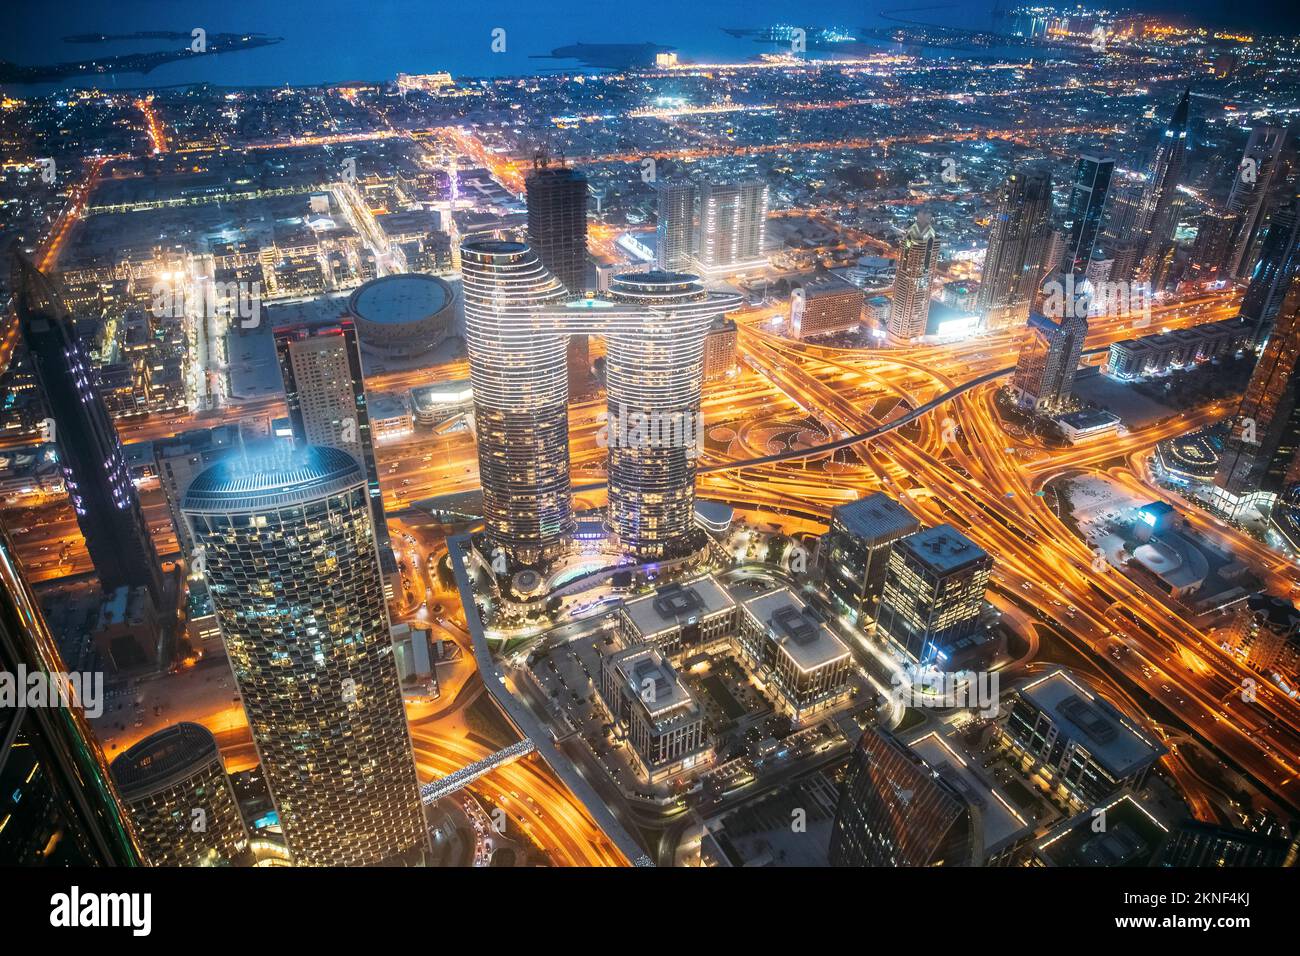 Vue de dessus ville paysage urbain dans les illuminations de nuit. Circulation de rue de nuit à Dubaï. Bord de mer et paysage urbain de Dubaï dans les illuminations de la soirée d'été Banque D'Images